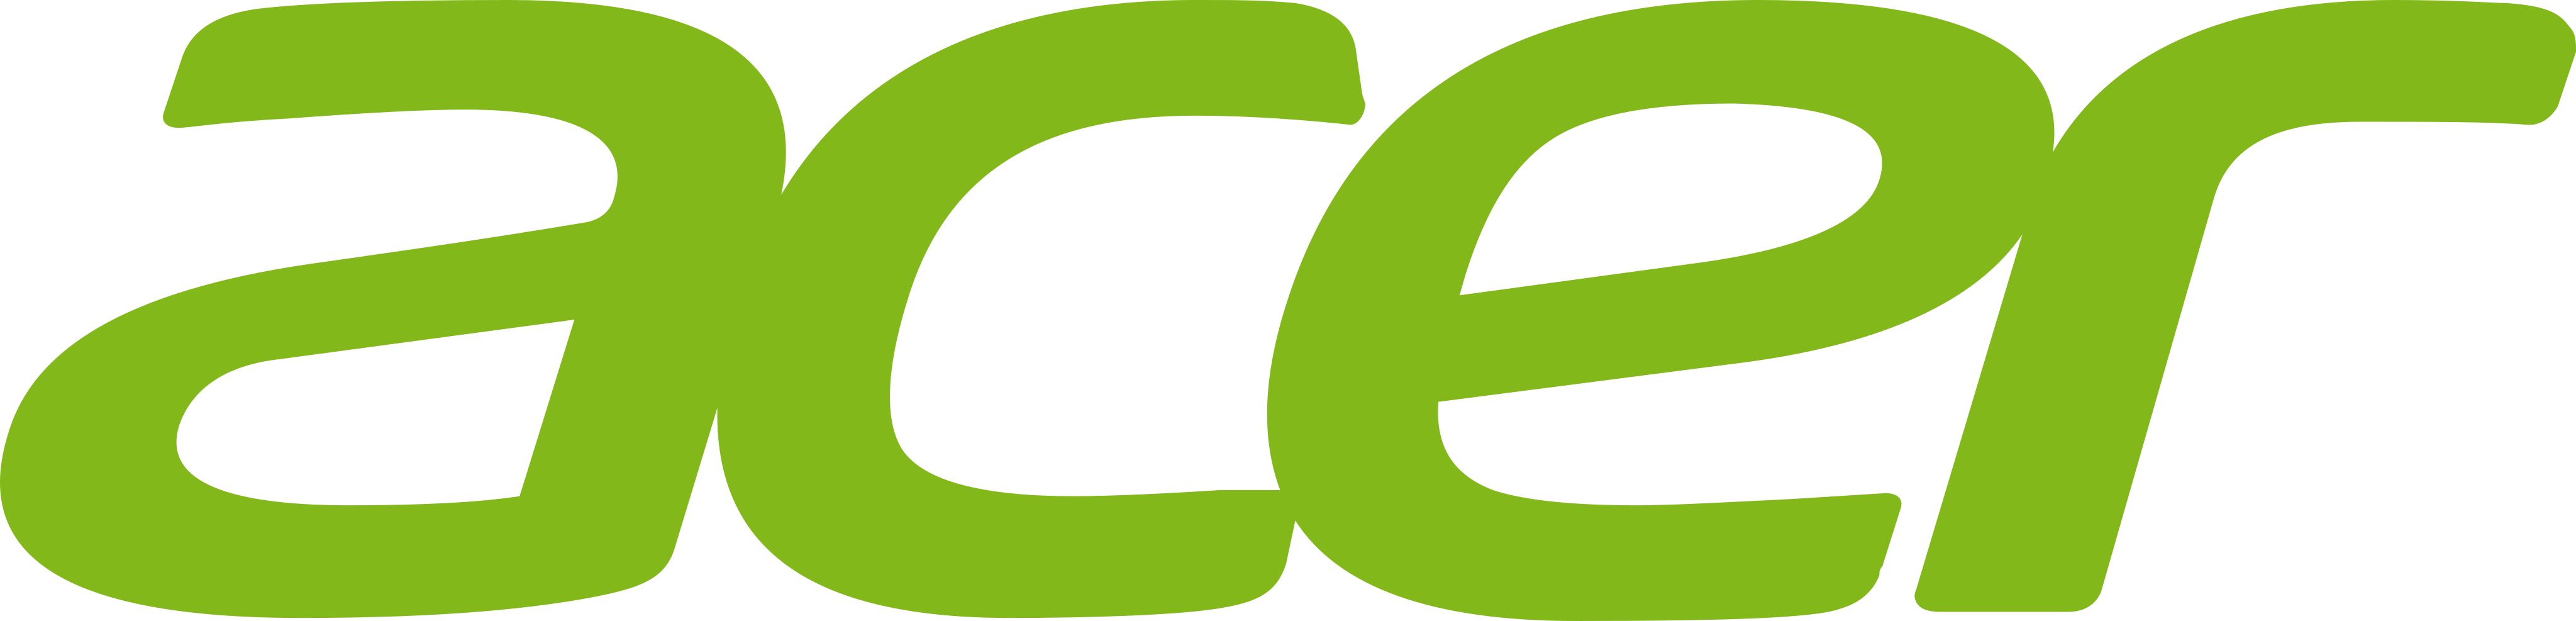 Acer徽标